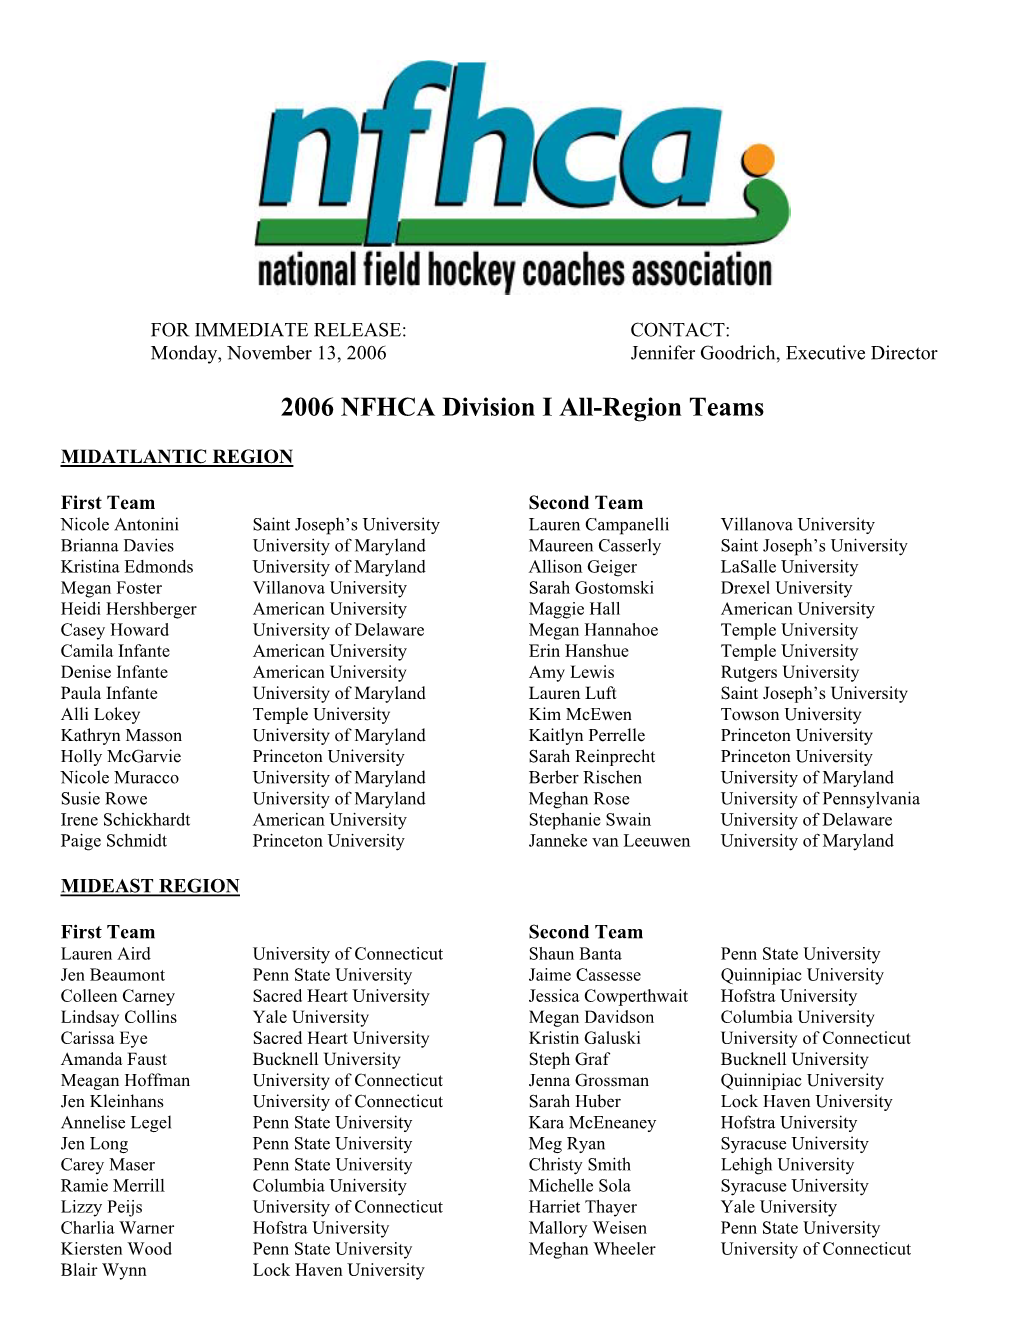 2006 NFHCA Division I All-Region Teams